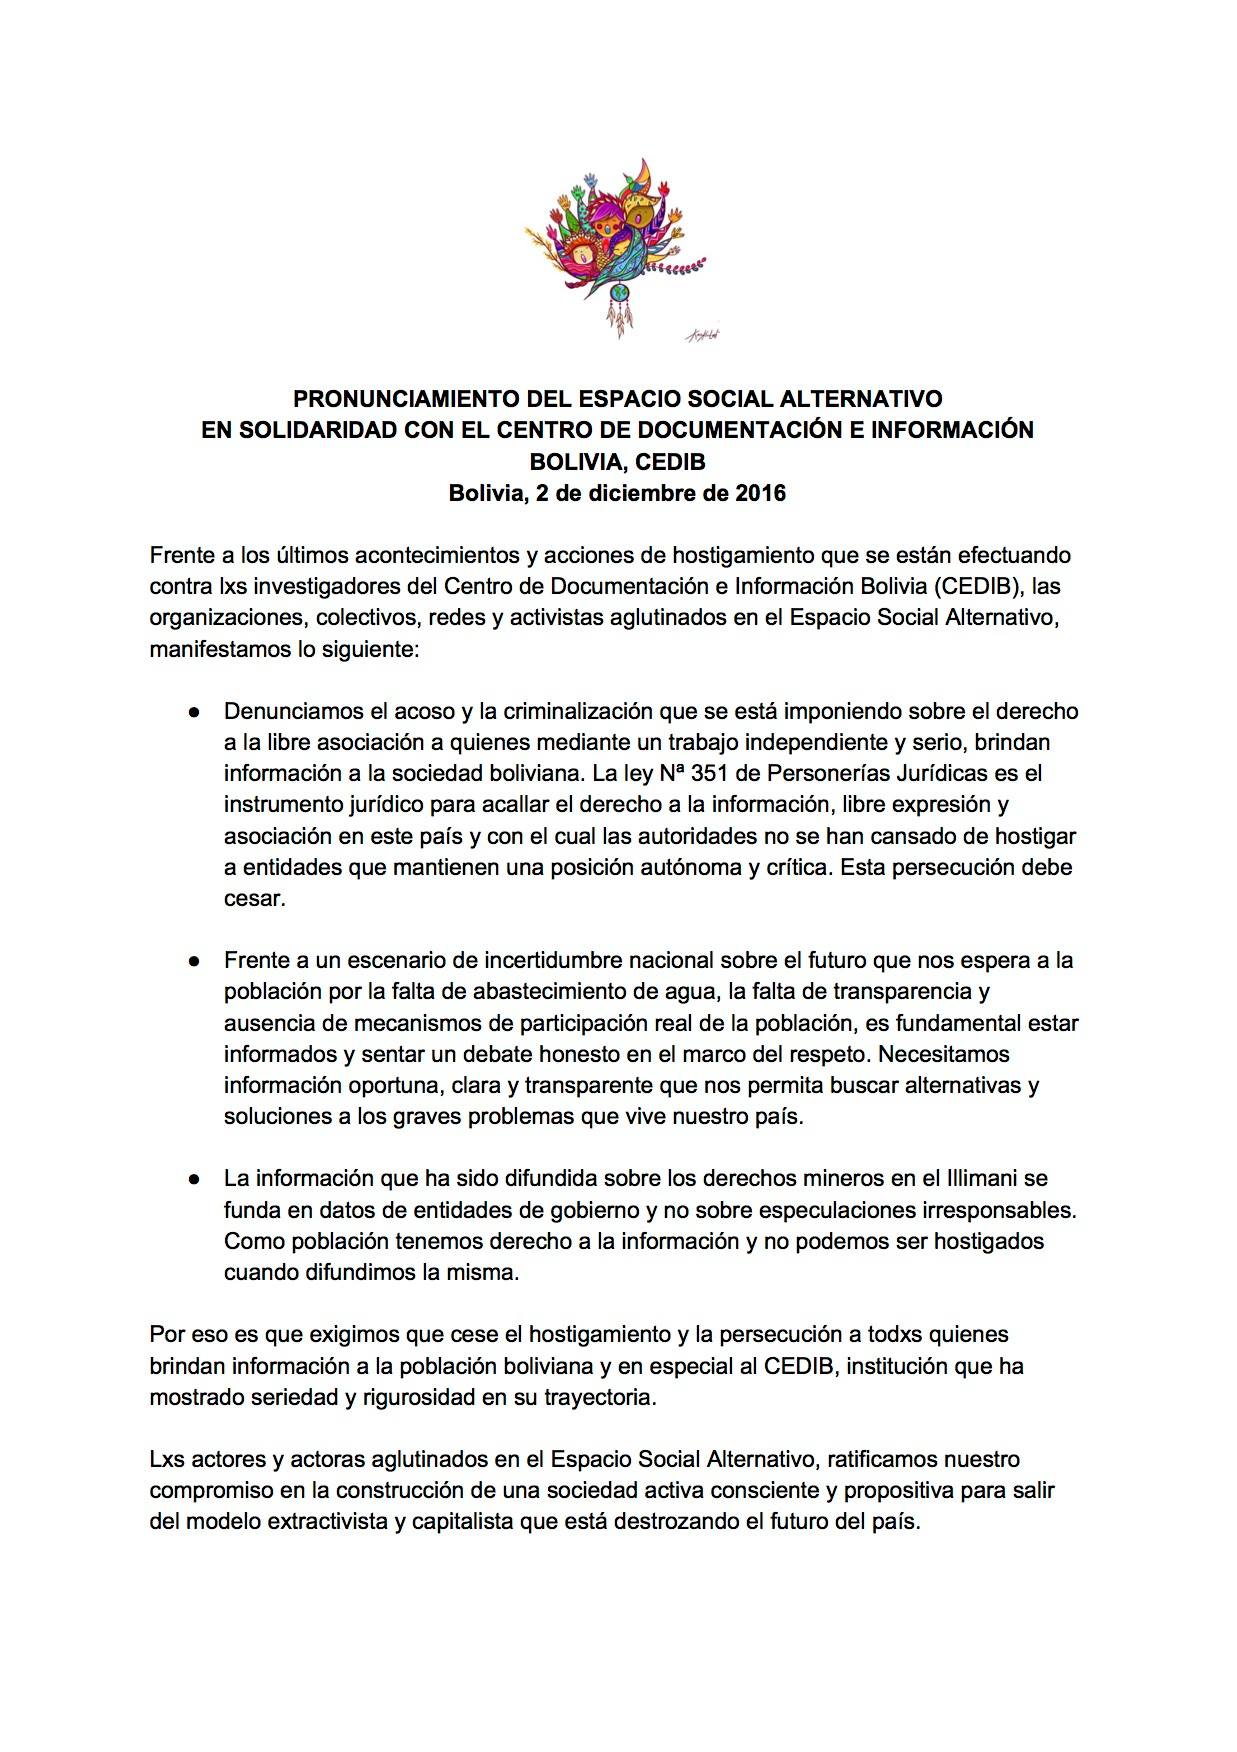 Pronunciamiento del Espacio Social Alternativo en Solidaridad con el Centro de Documentación e Información Bolivia – CEDIB